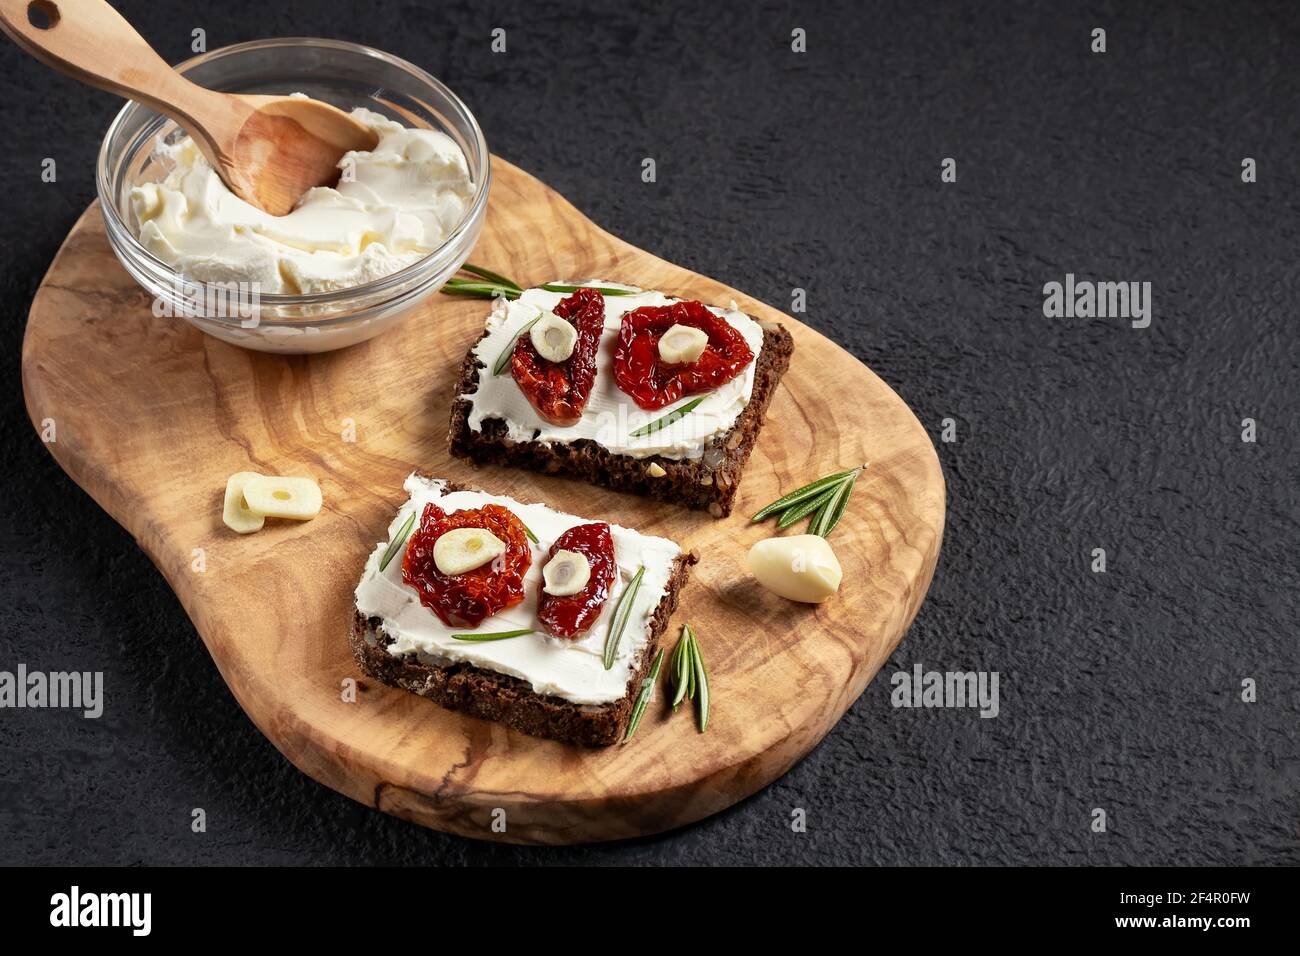 Des sandwichs au pain multigrain faits maison avec fromage à la crème et tomates séchées sur un plateau en bois. Concept de saine alimentation, copier l'espace Banque D'Images